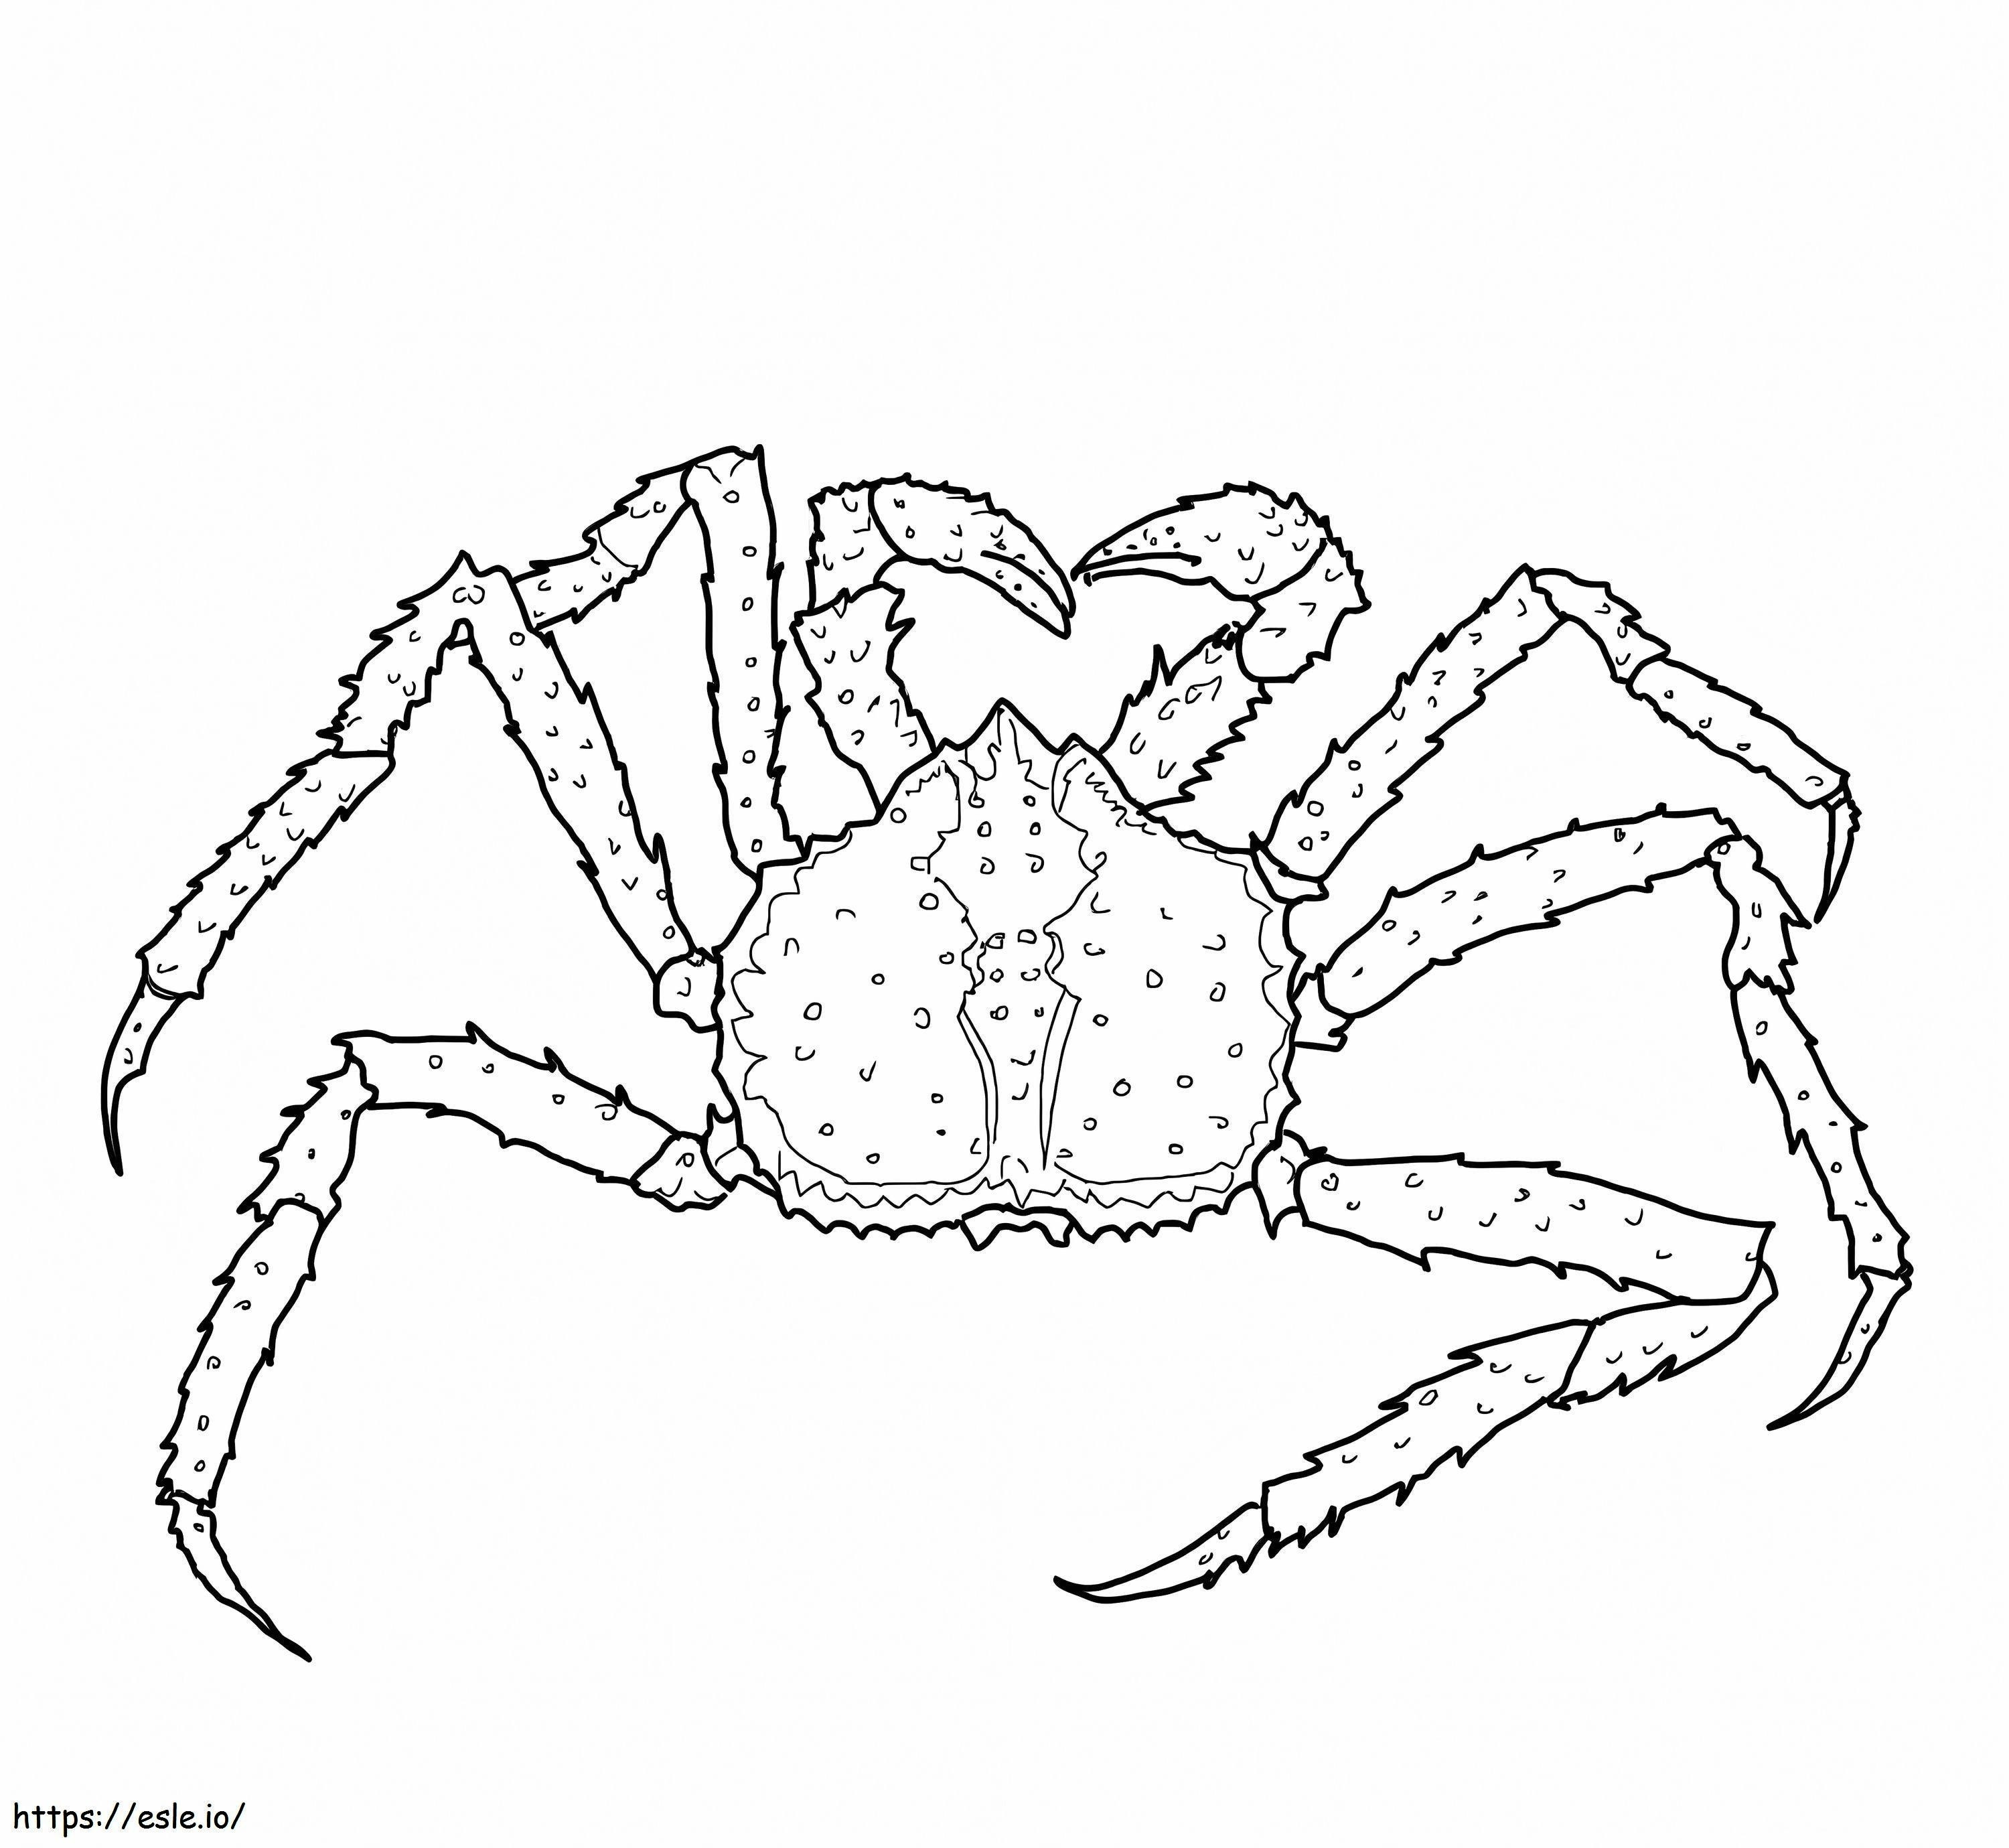 Coloriage Crabe royal à imprimer dessin